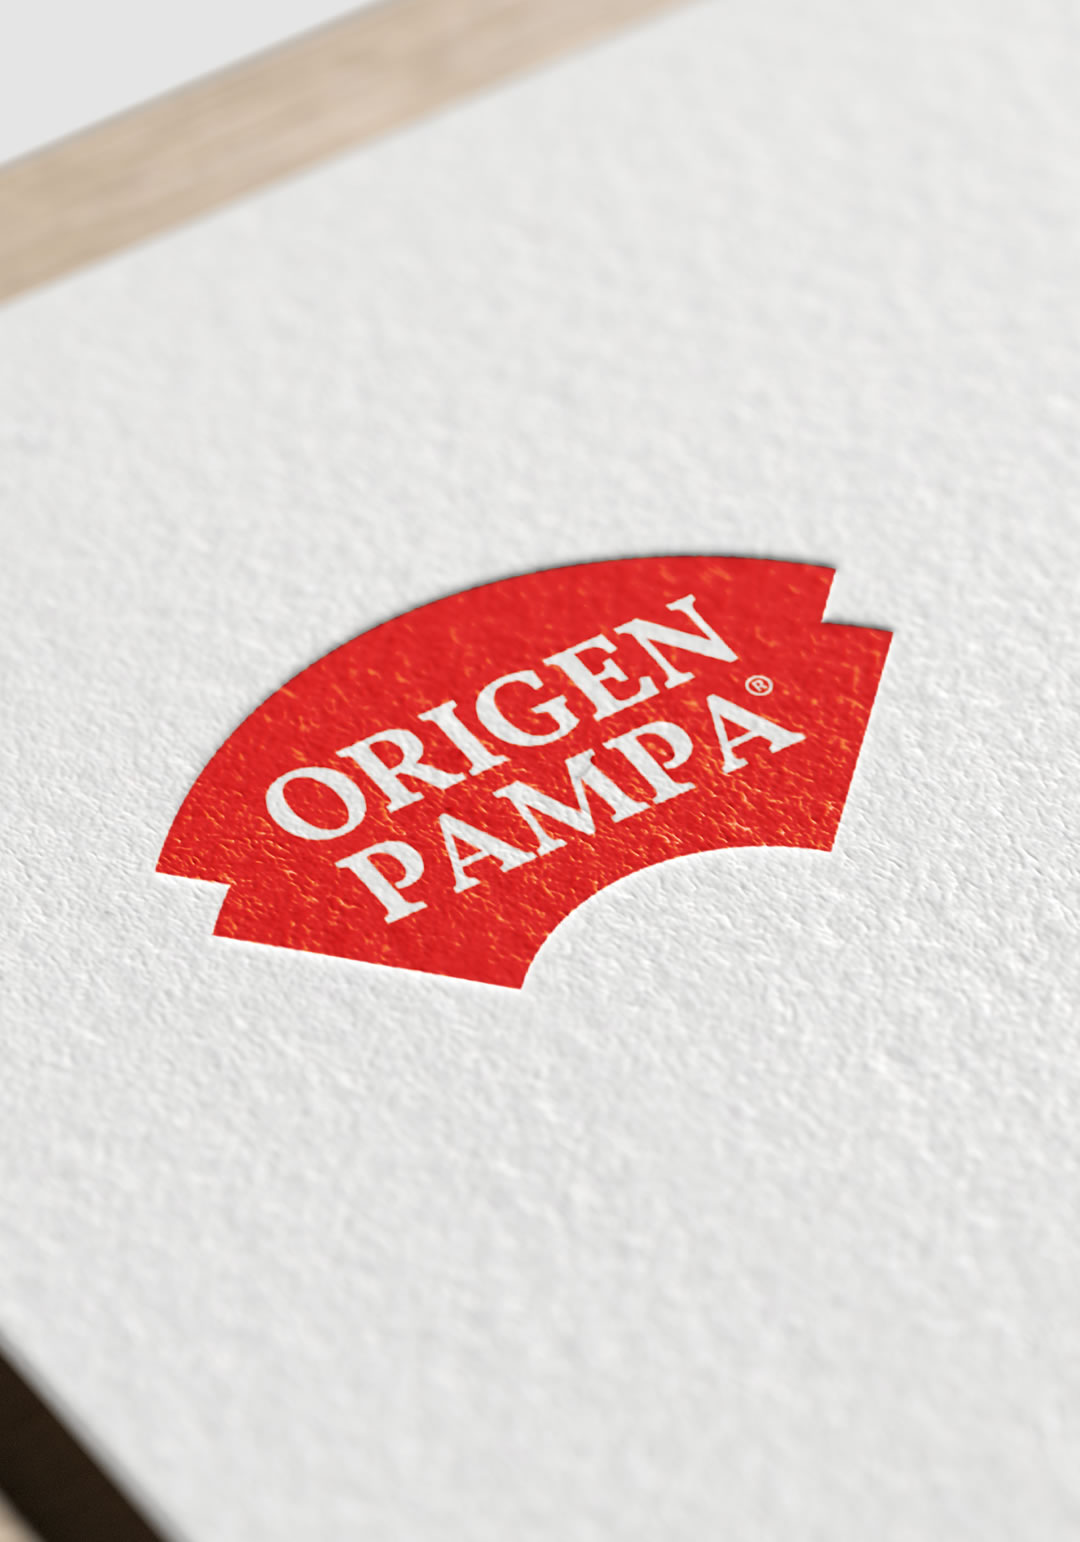 Origen Pampa › Proyecto de branding (logotipo con fondo)